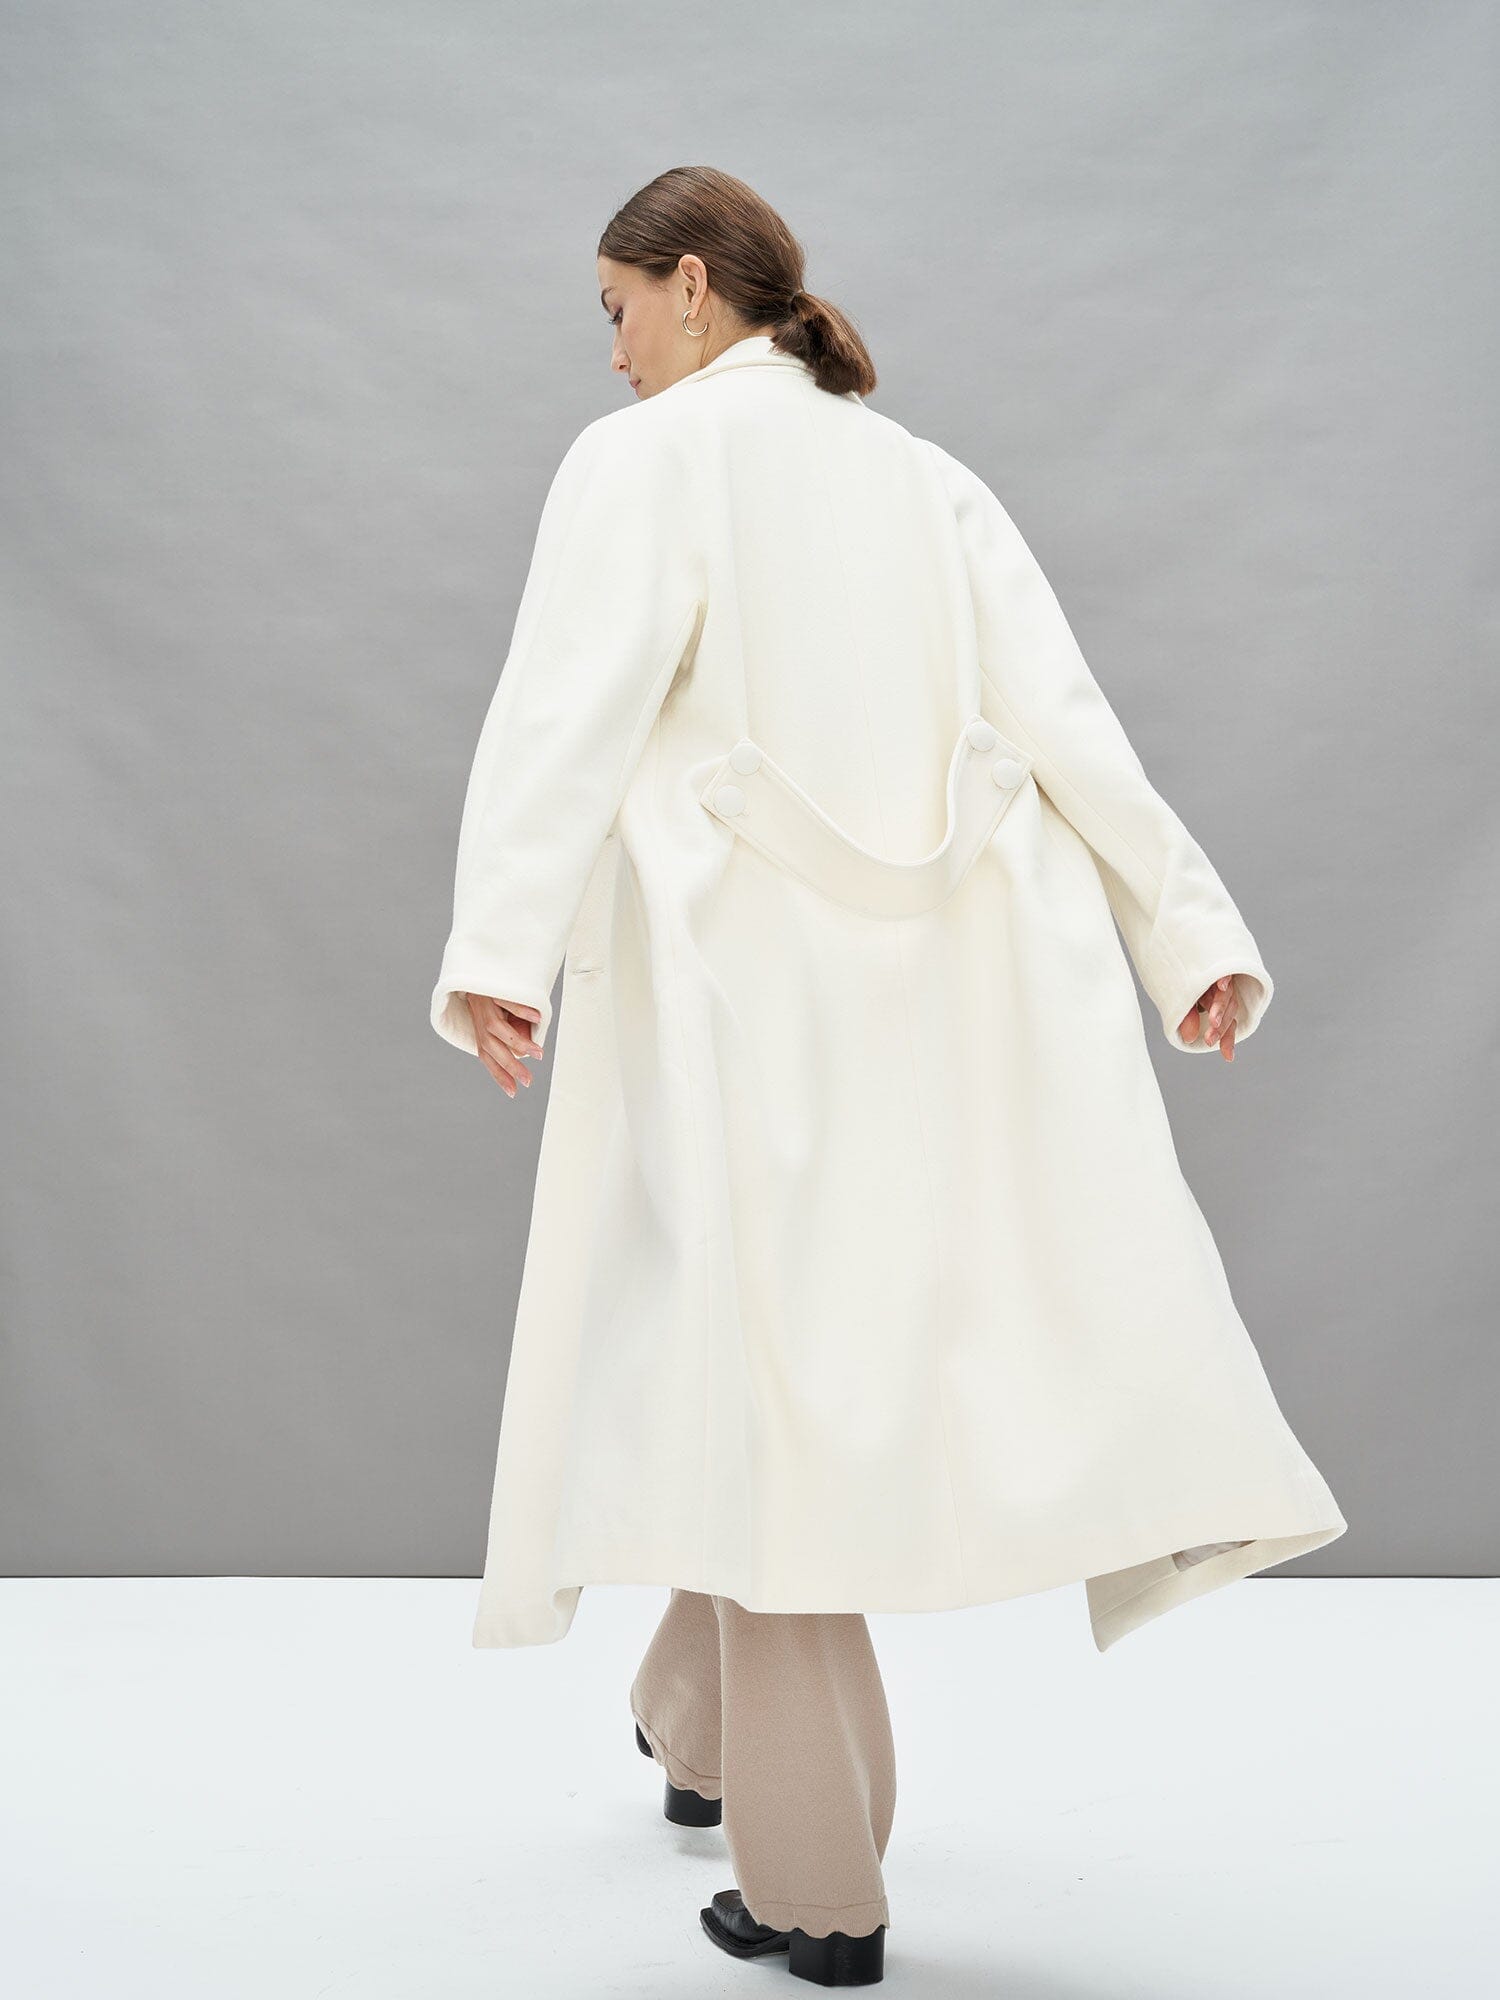 EBONY - Long Oversized Coat in Virgin Wool Sheath Collar Ecru Coat Fête Impériale